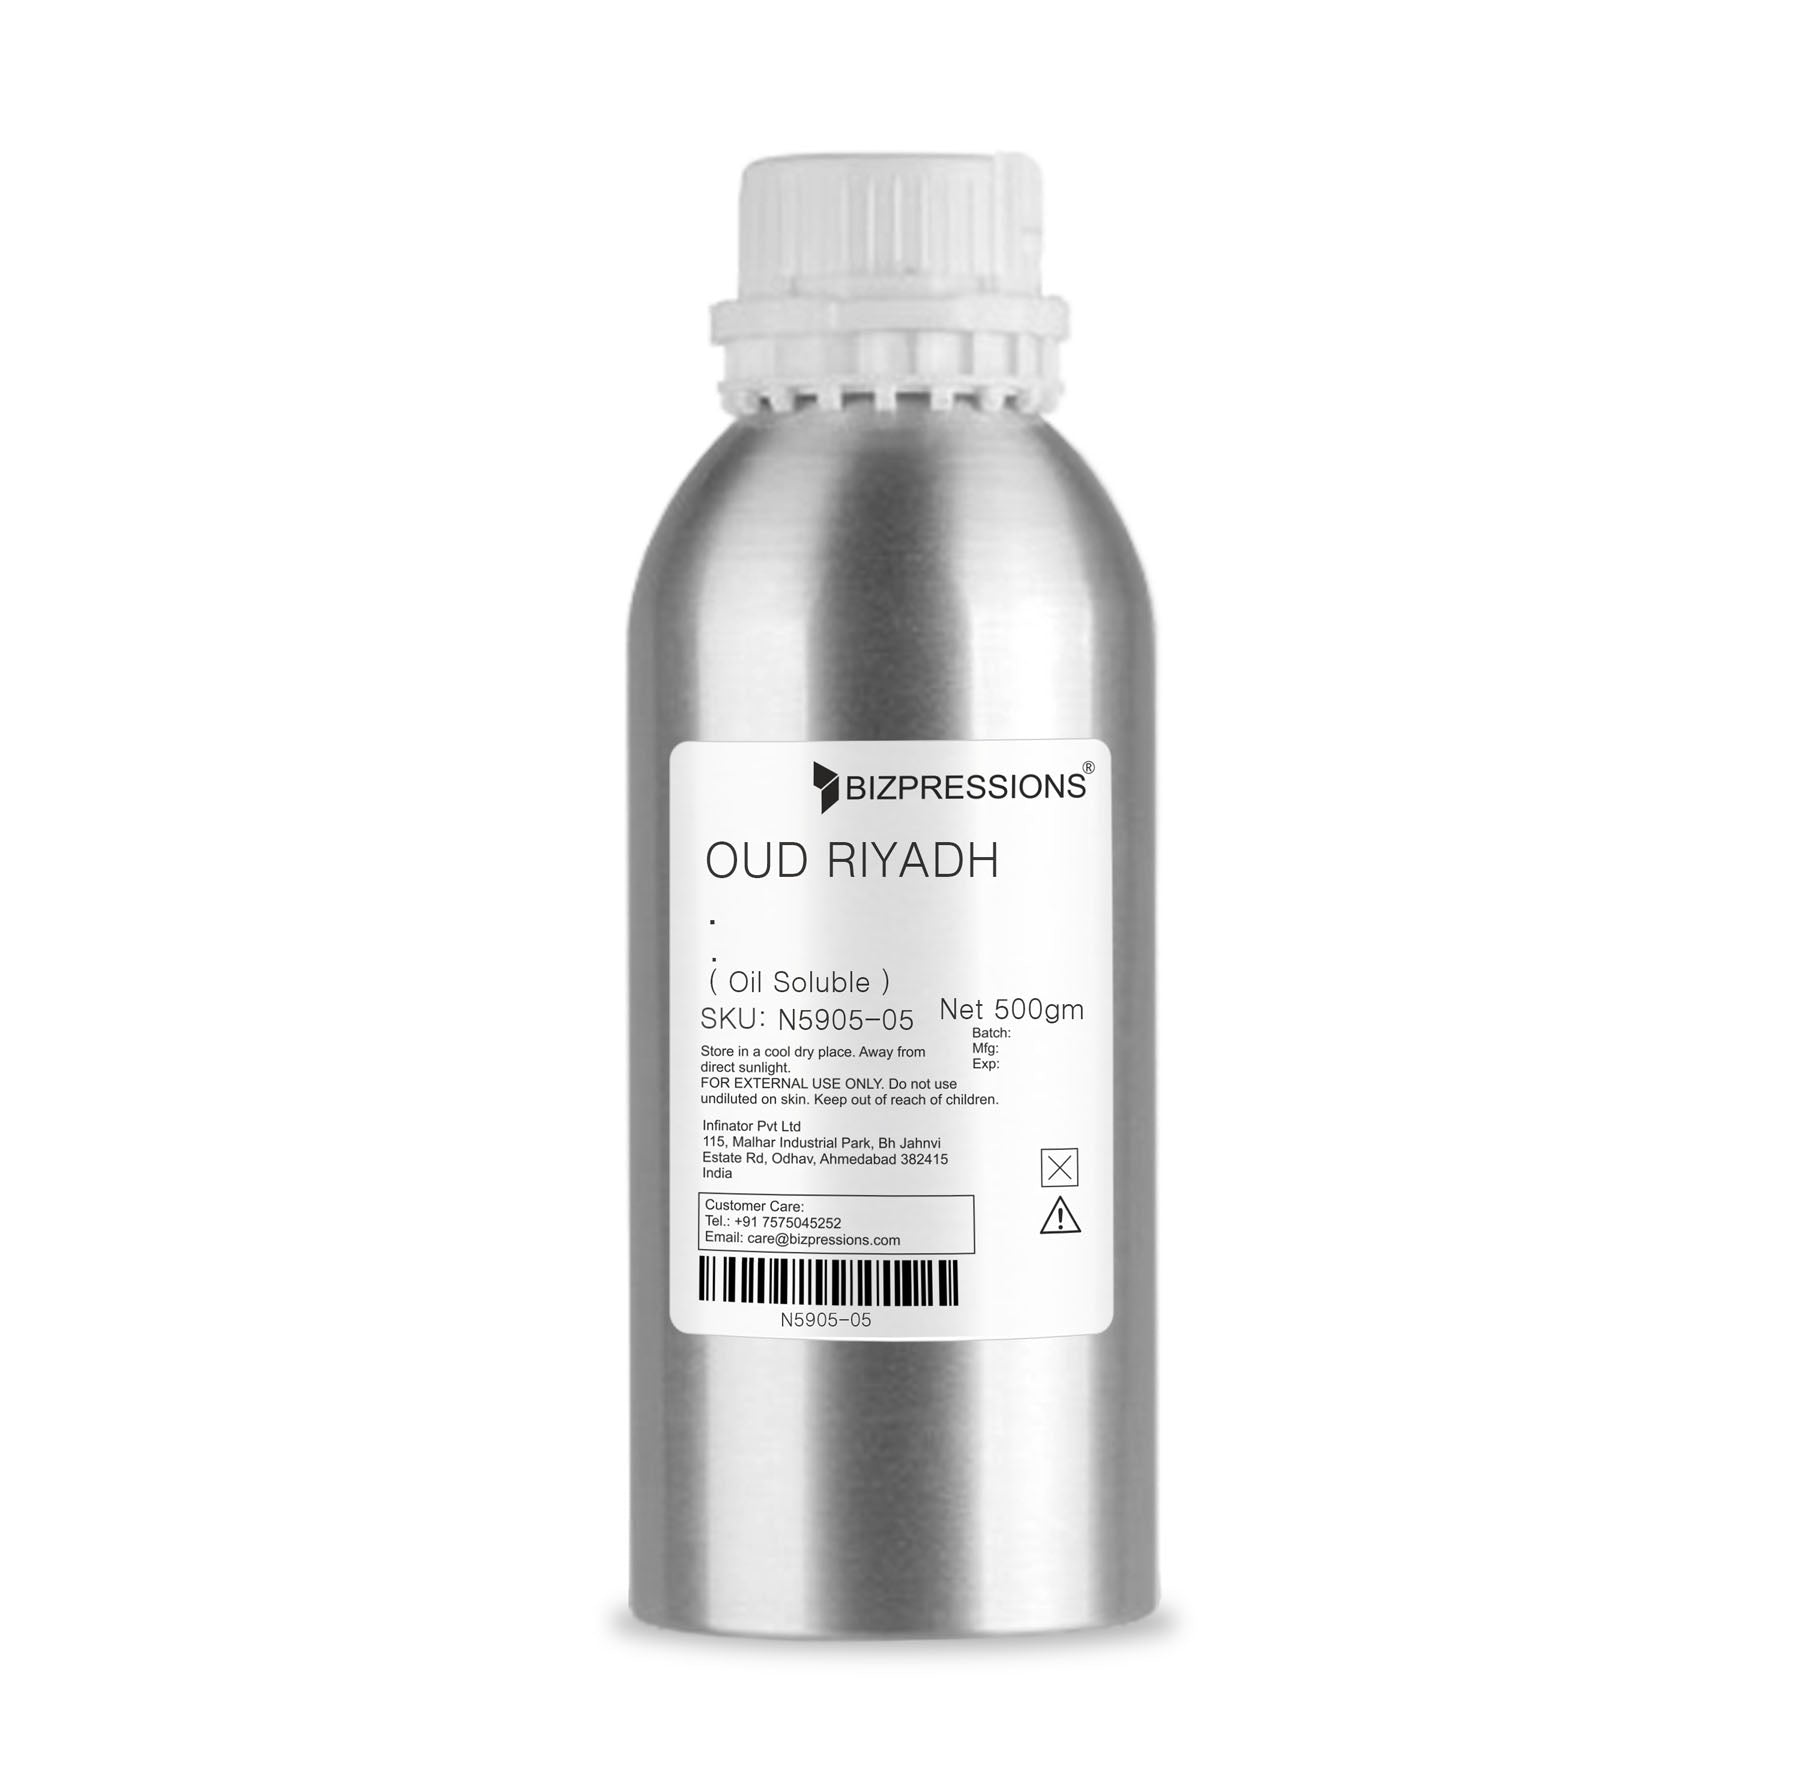 OUD RIYADH - Fragrance ( Oil Soluble ) - 500 gm